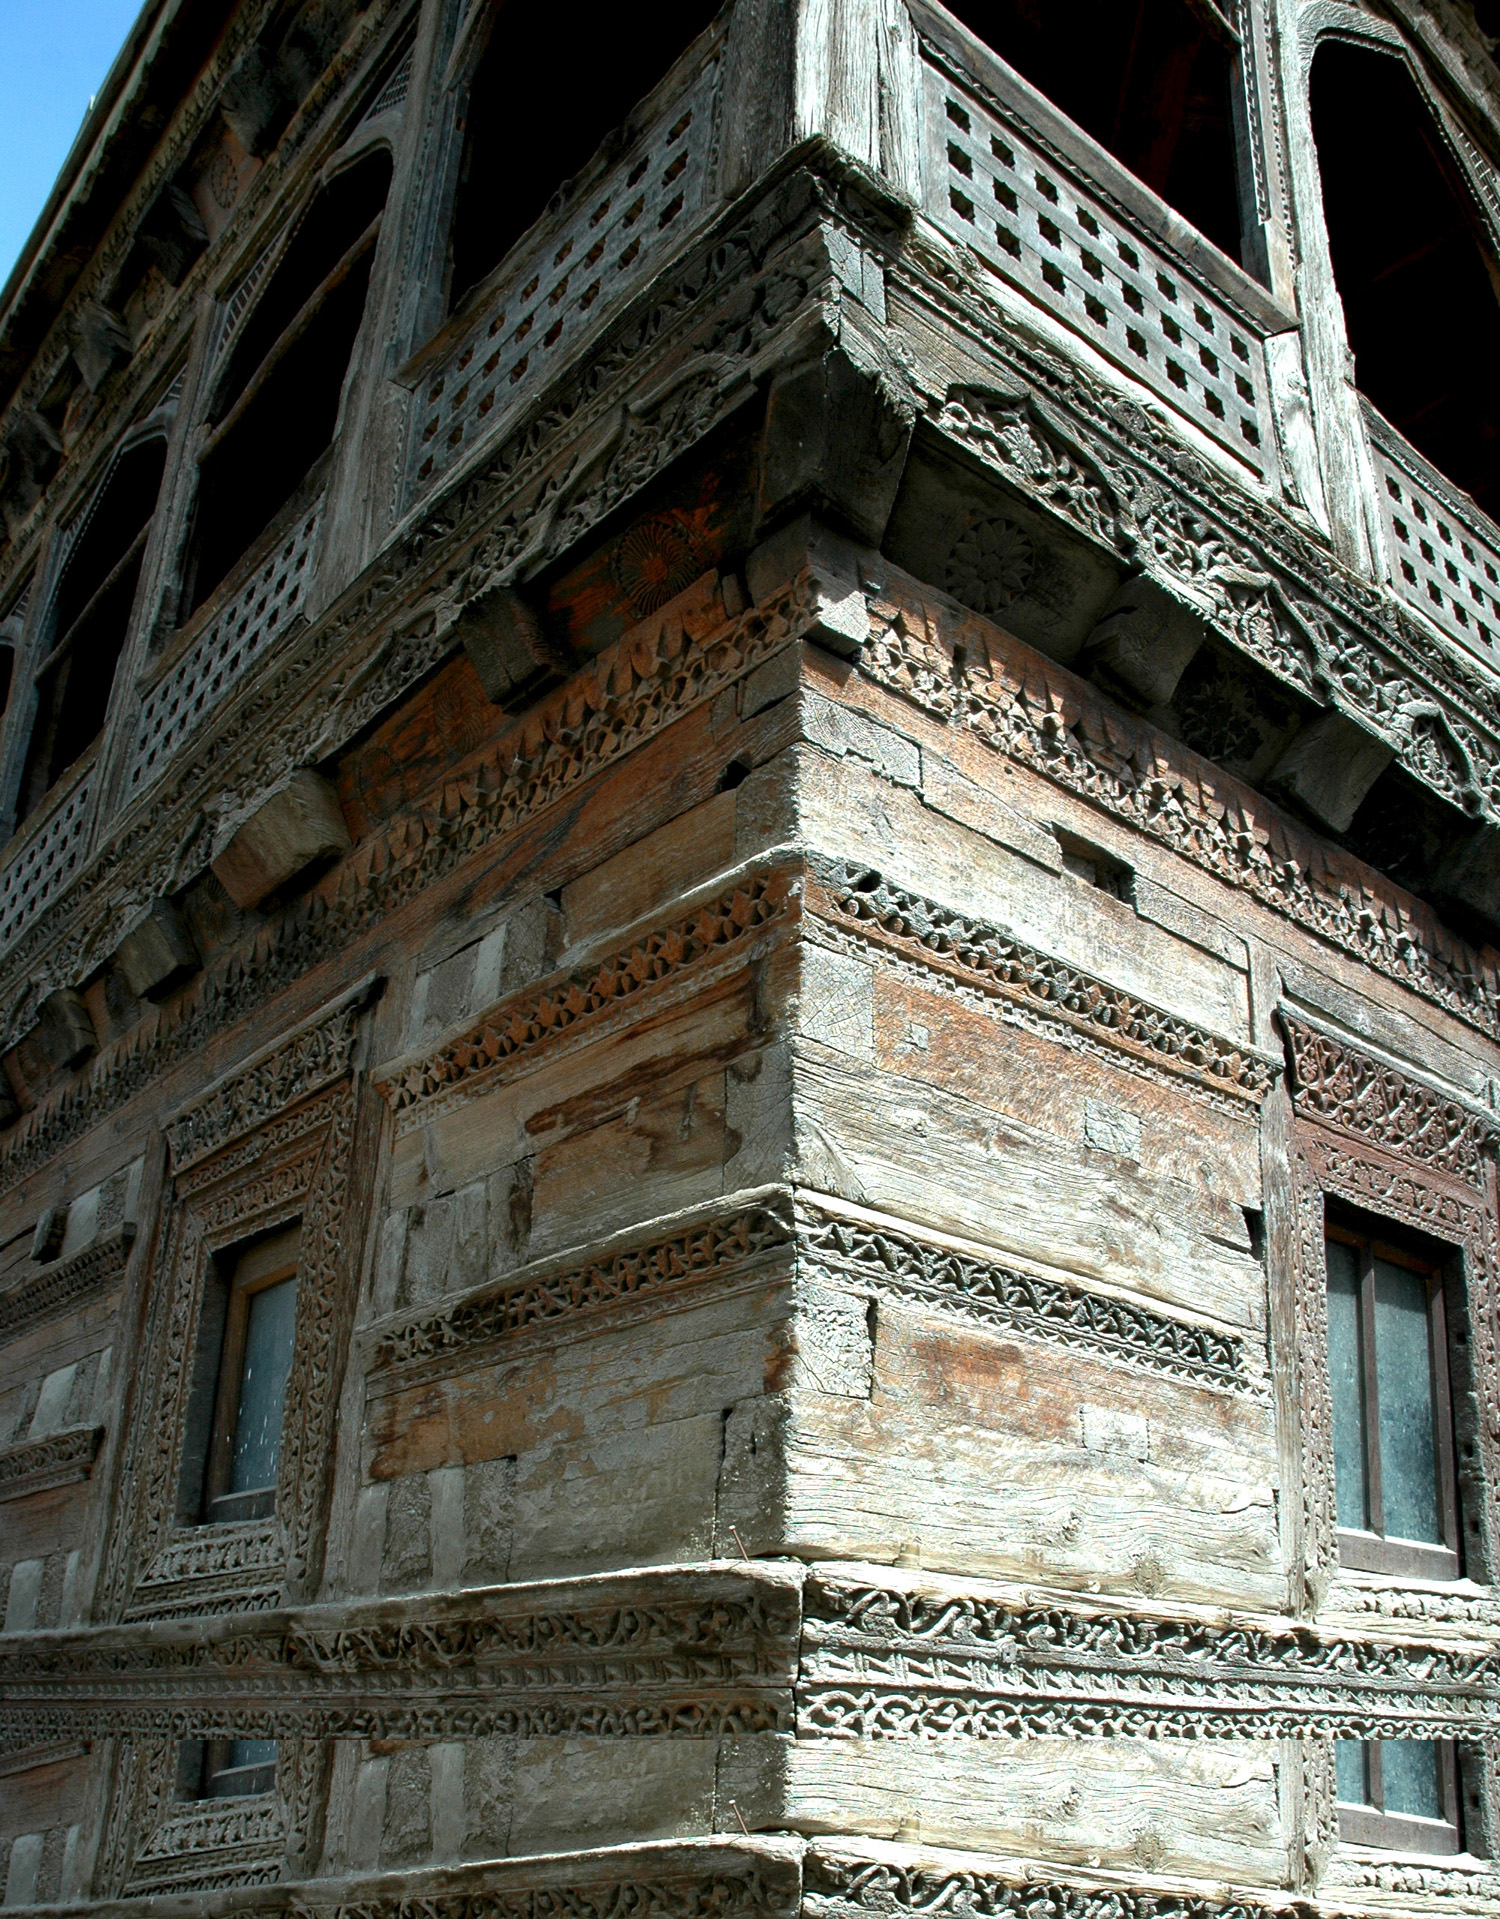 Corner showing carved wooden elements